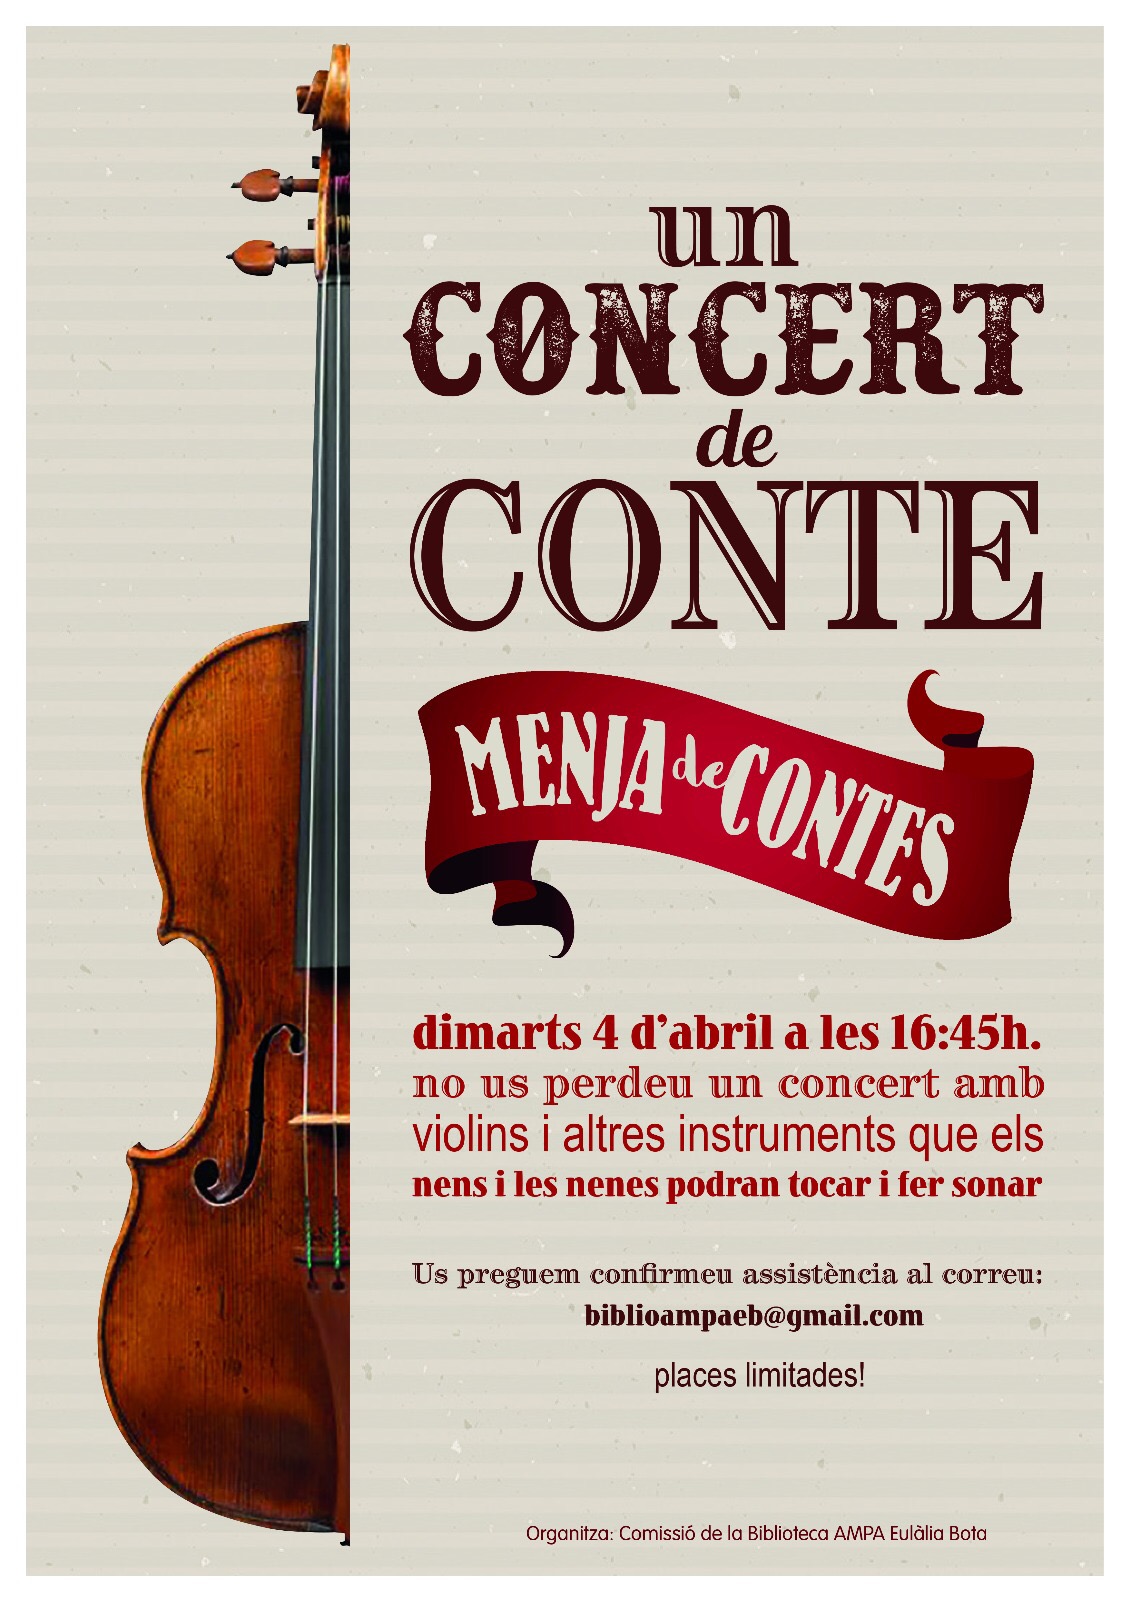 Nova Menja de Contes…Un Concert de Conte!